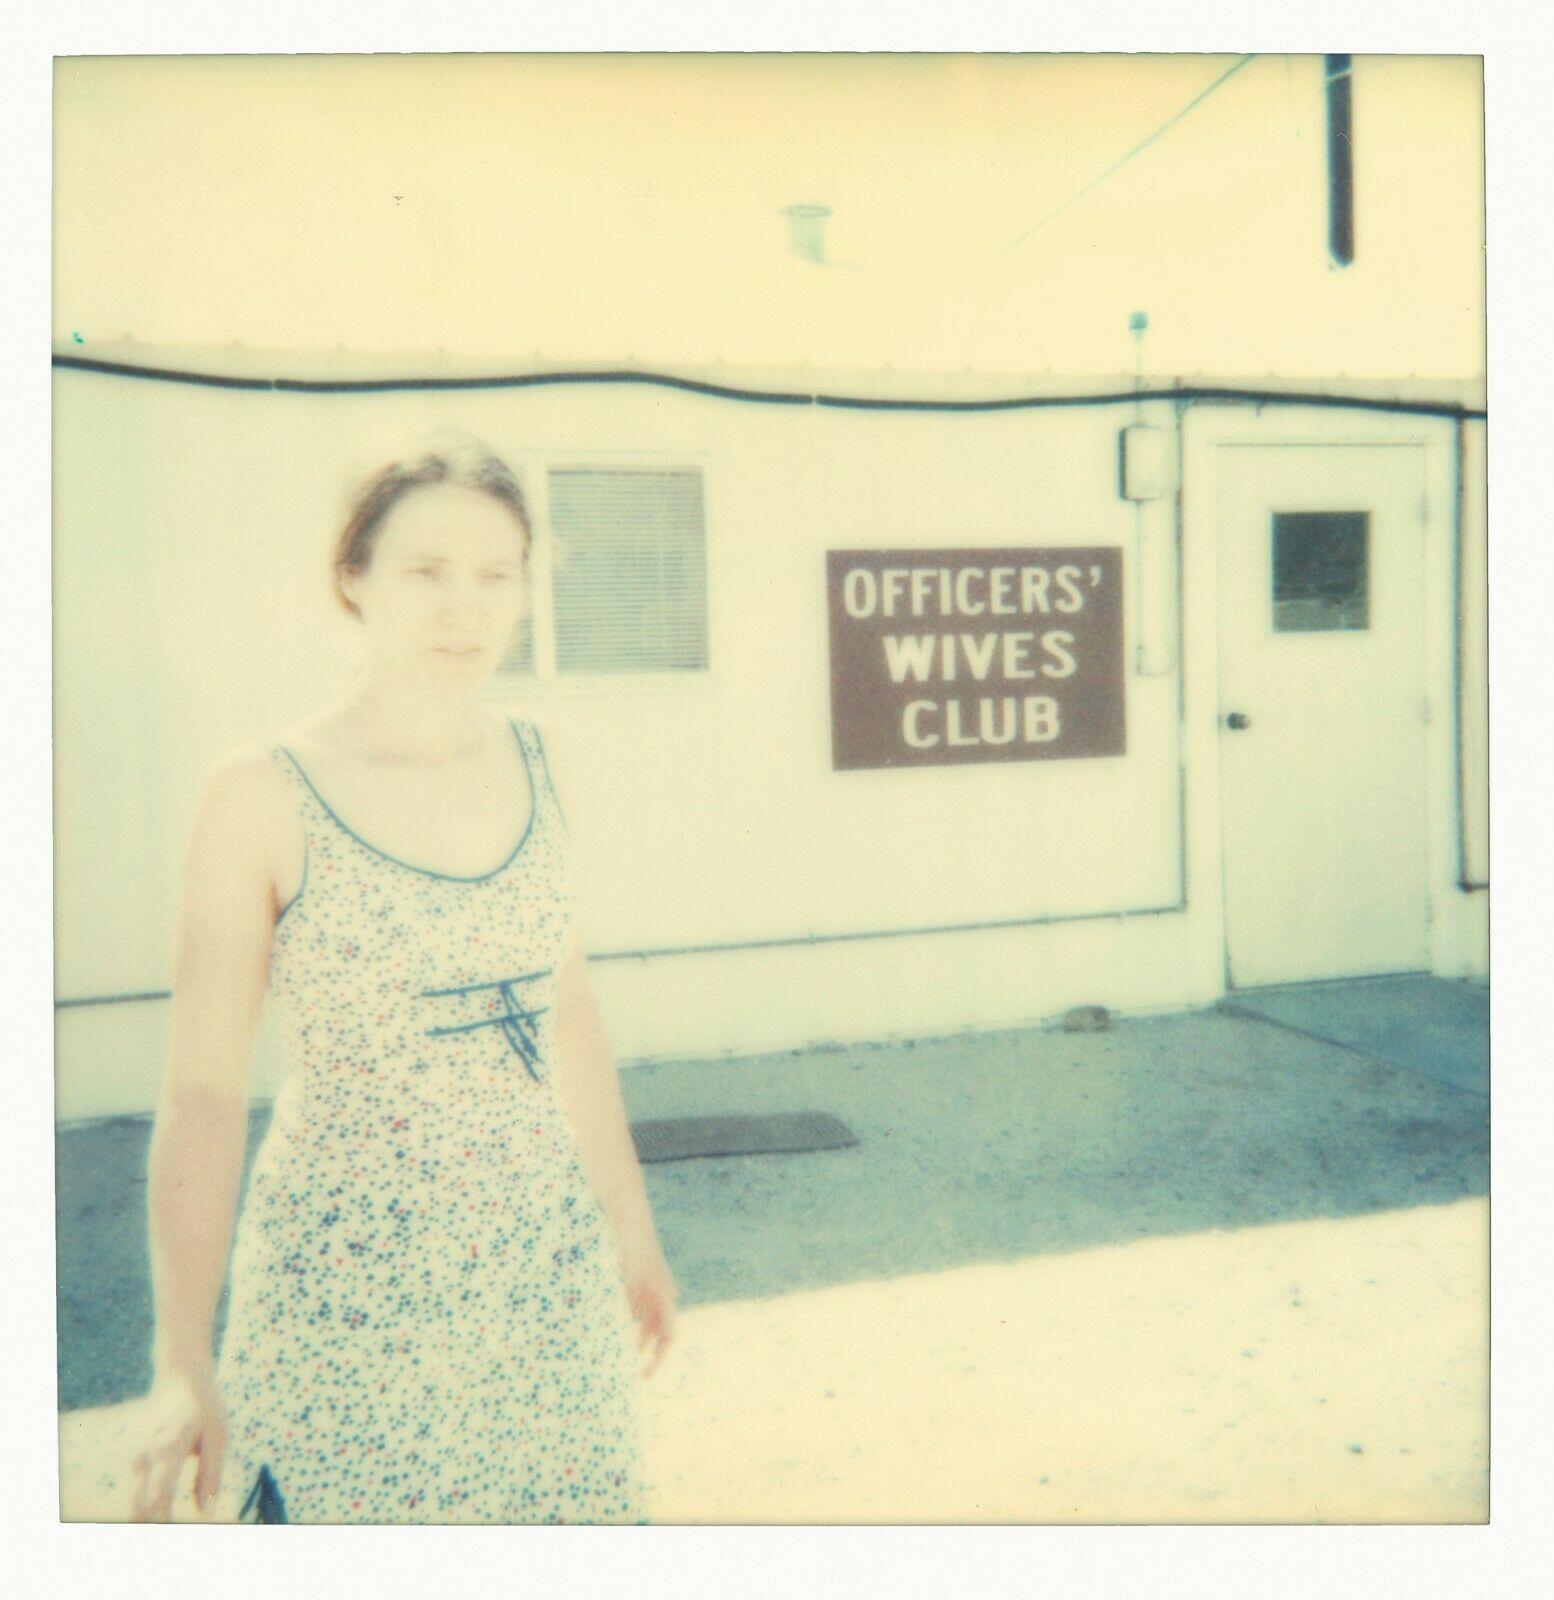 Officer's Wives Club – Zeitgenössisch, 21. Jahrhundert, Polaroid, figurativ – Photograph von Stefanie Schneider